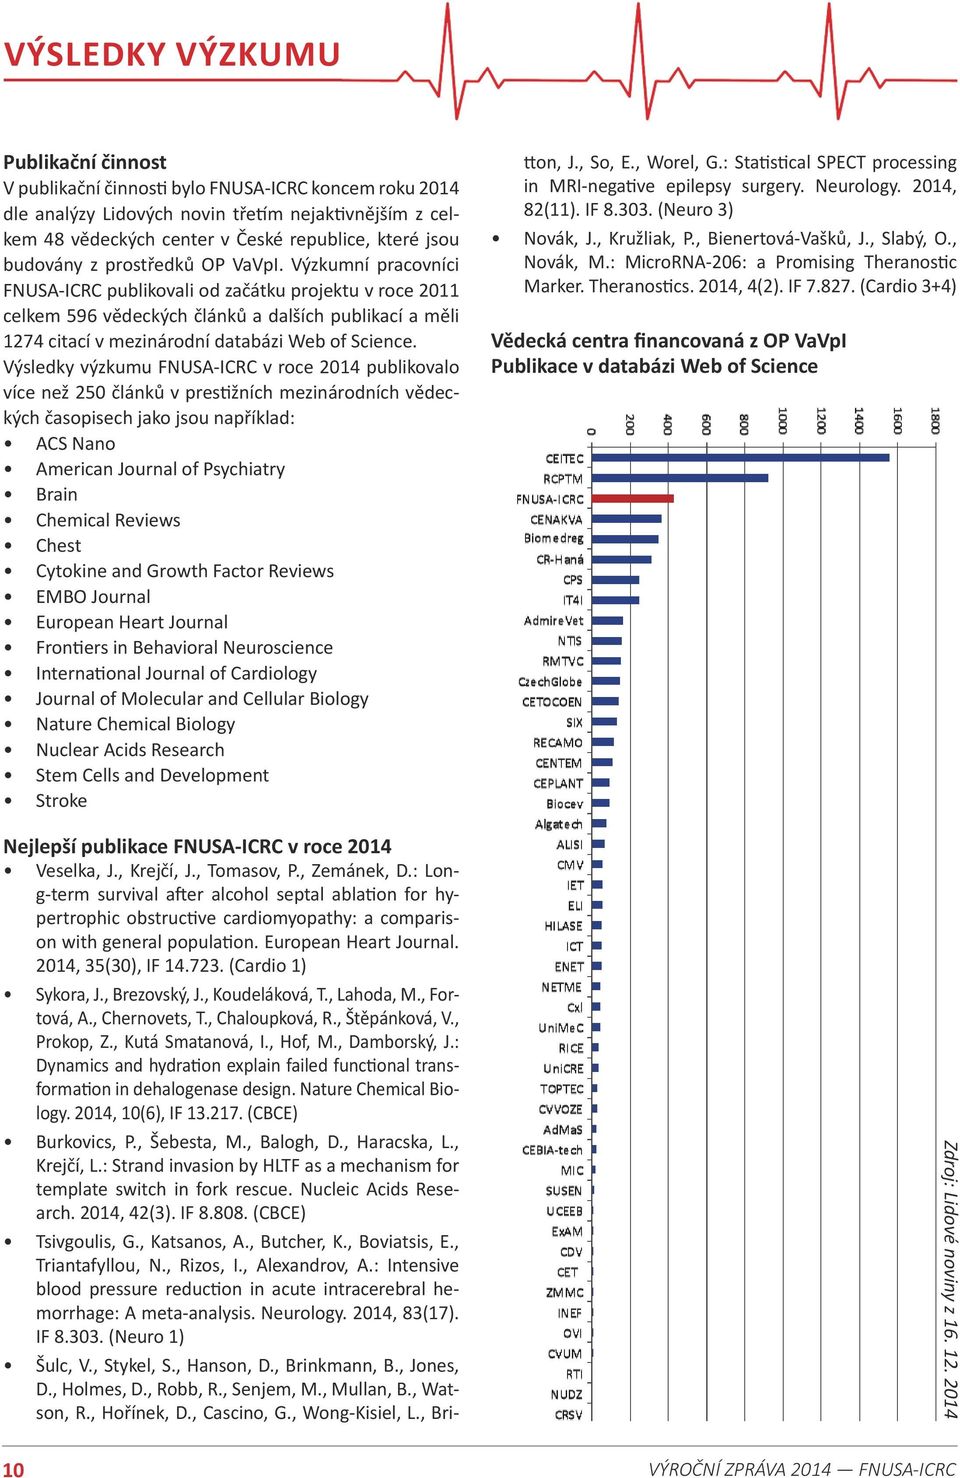 Výzkumní pracovníci FNUSA-ICRC publikovali od začátku projektu v roce 2011 celkem 596 vědeckých článků a dalších publikací a měli 1274 citací v mezinárodní databázi Web of Science.